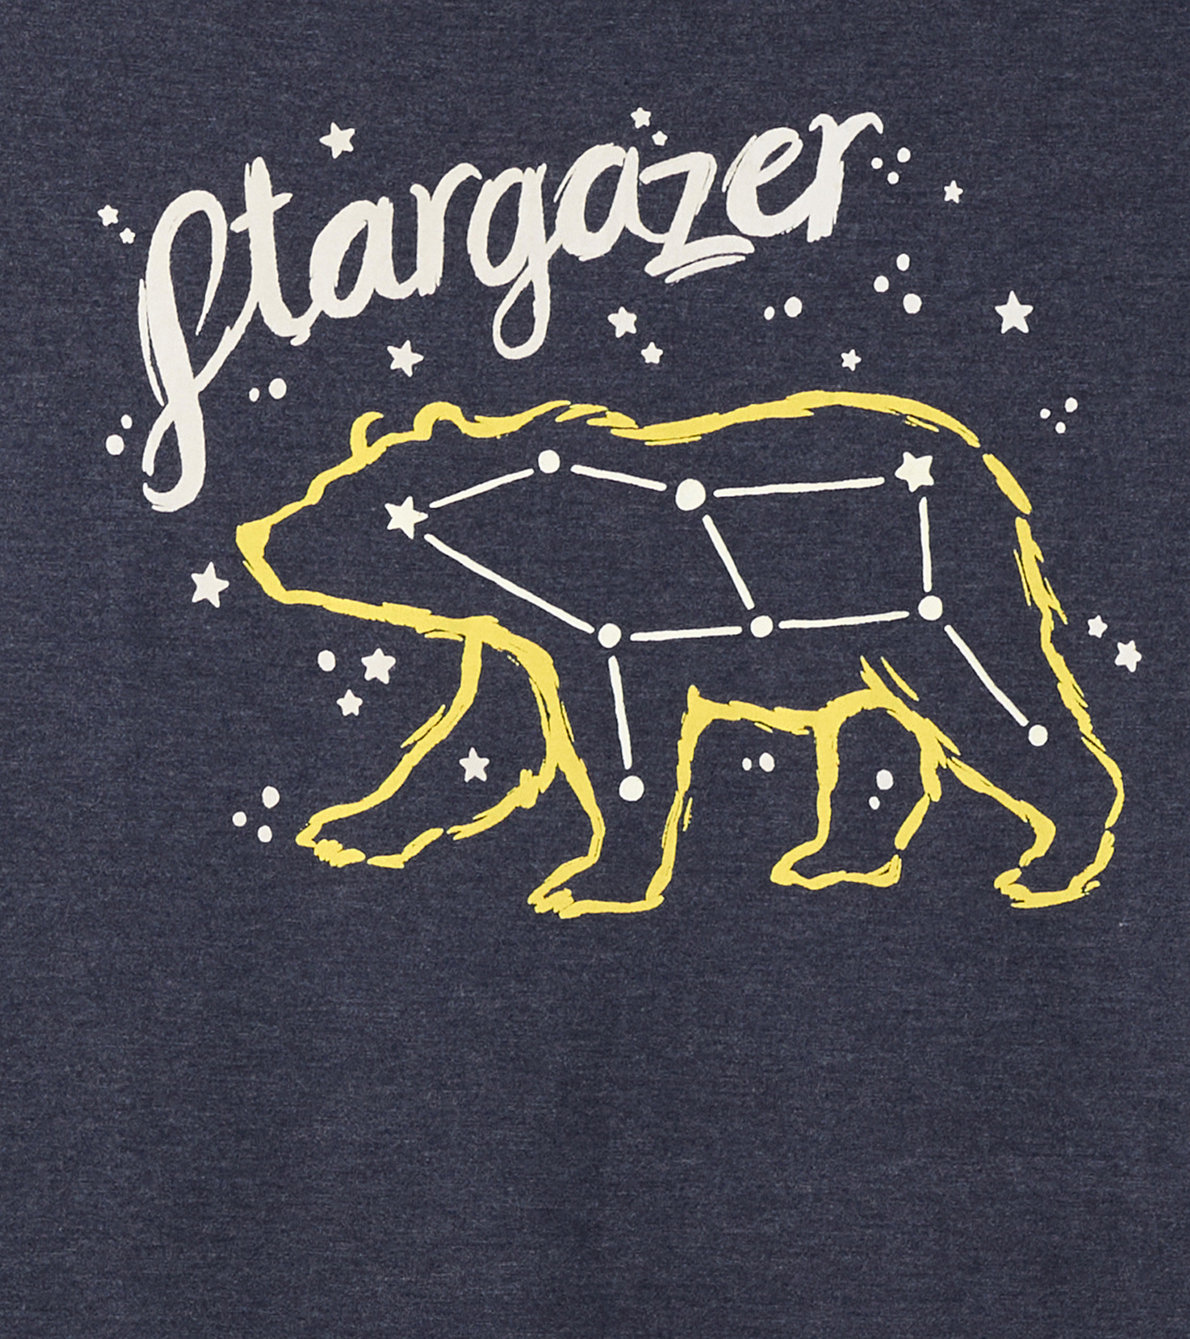 View larger image of Stargazer Women's Pajama T-Shirt